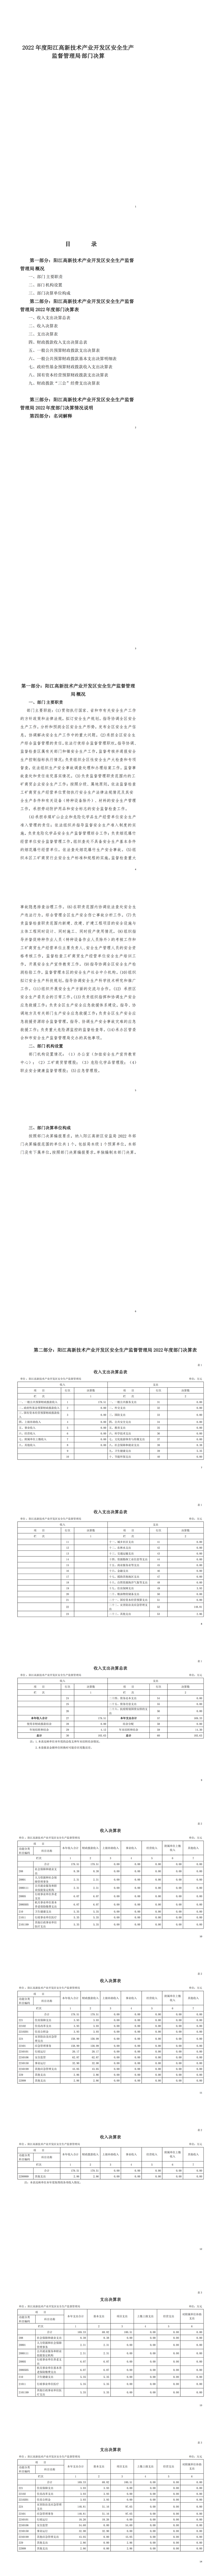 2022年度阳江高新技术产业开发区安全生产监督管理局部门决算 (1)_00.png